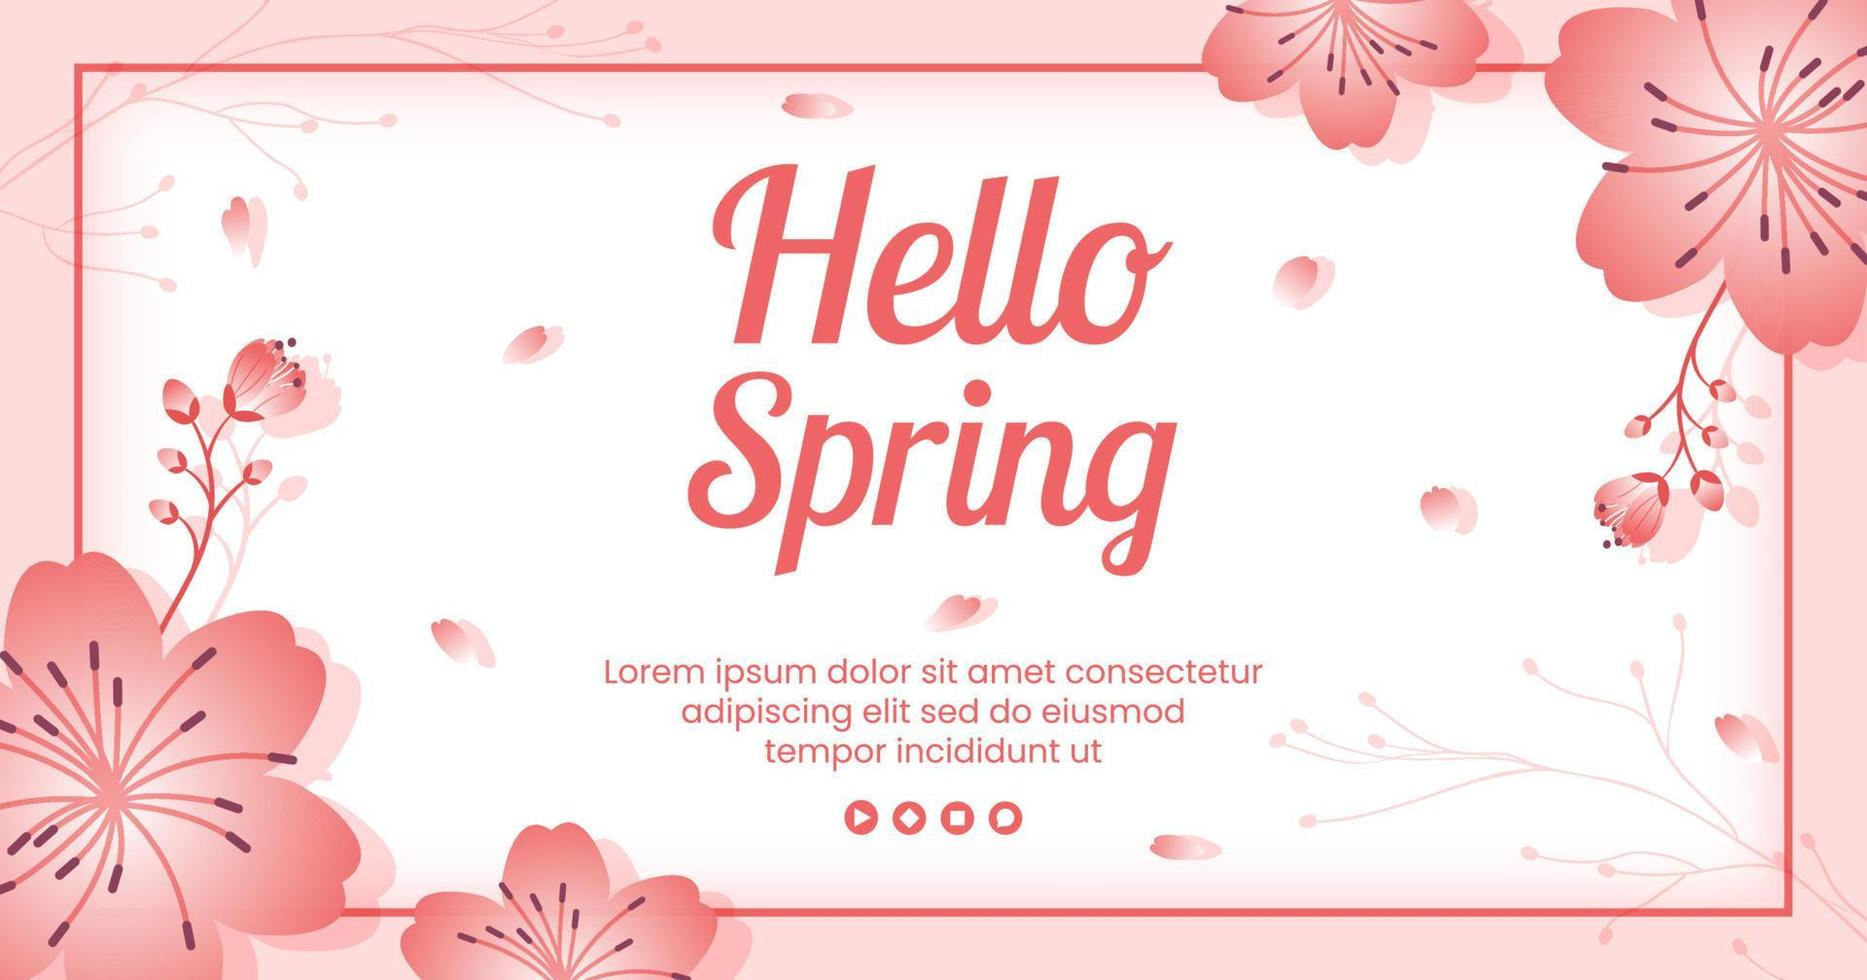 primavera con flores de sakura en flor plantilla de publicación ilustración plana editable de fondo cuadrado para redes sociales o tarjeta de felicitación vector